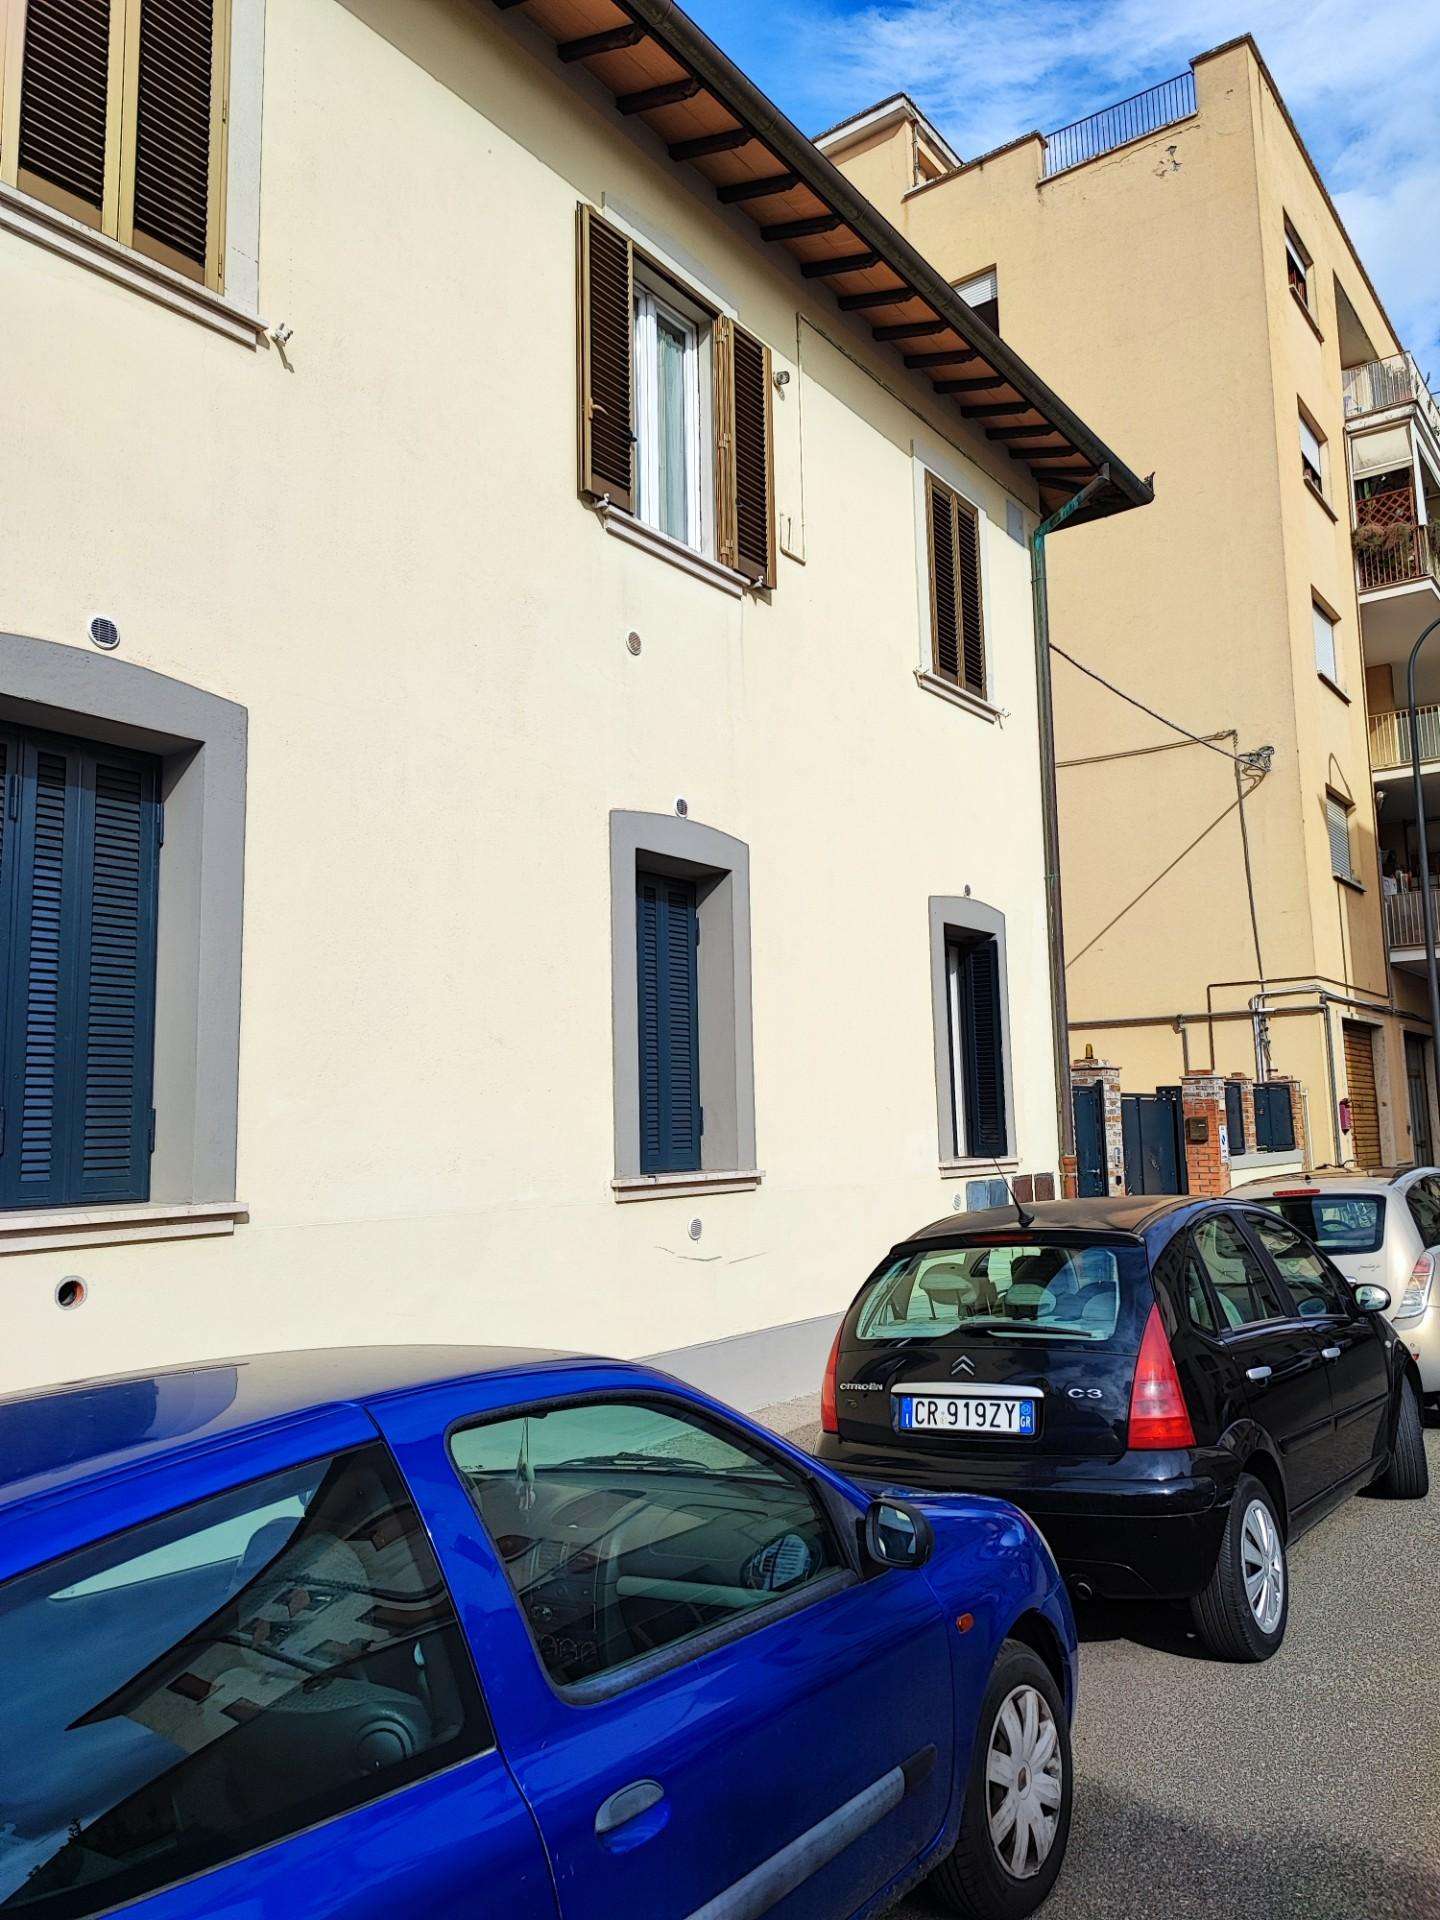 Casa Bi - Trifamiliare in Vendita a Grosseto Via Trento,